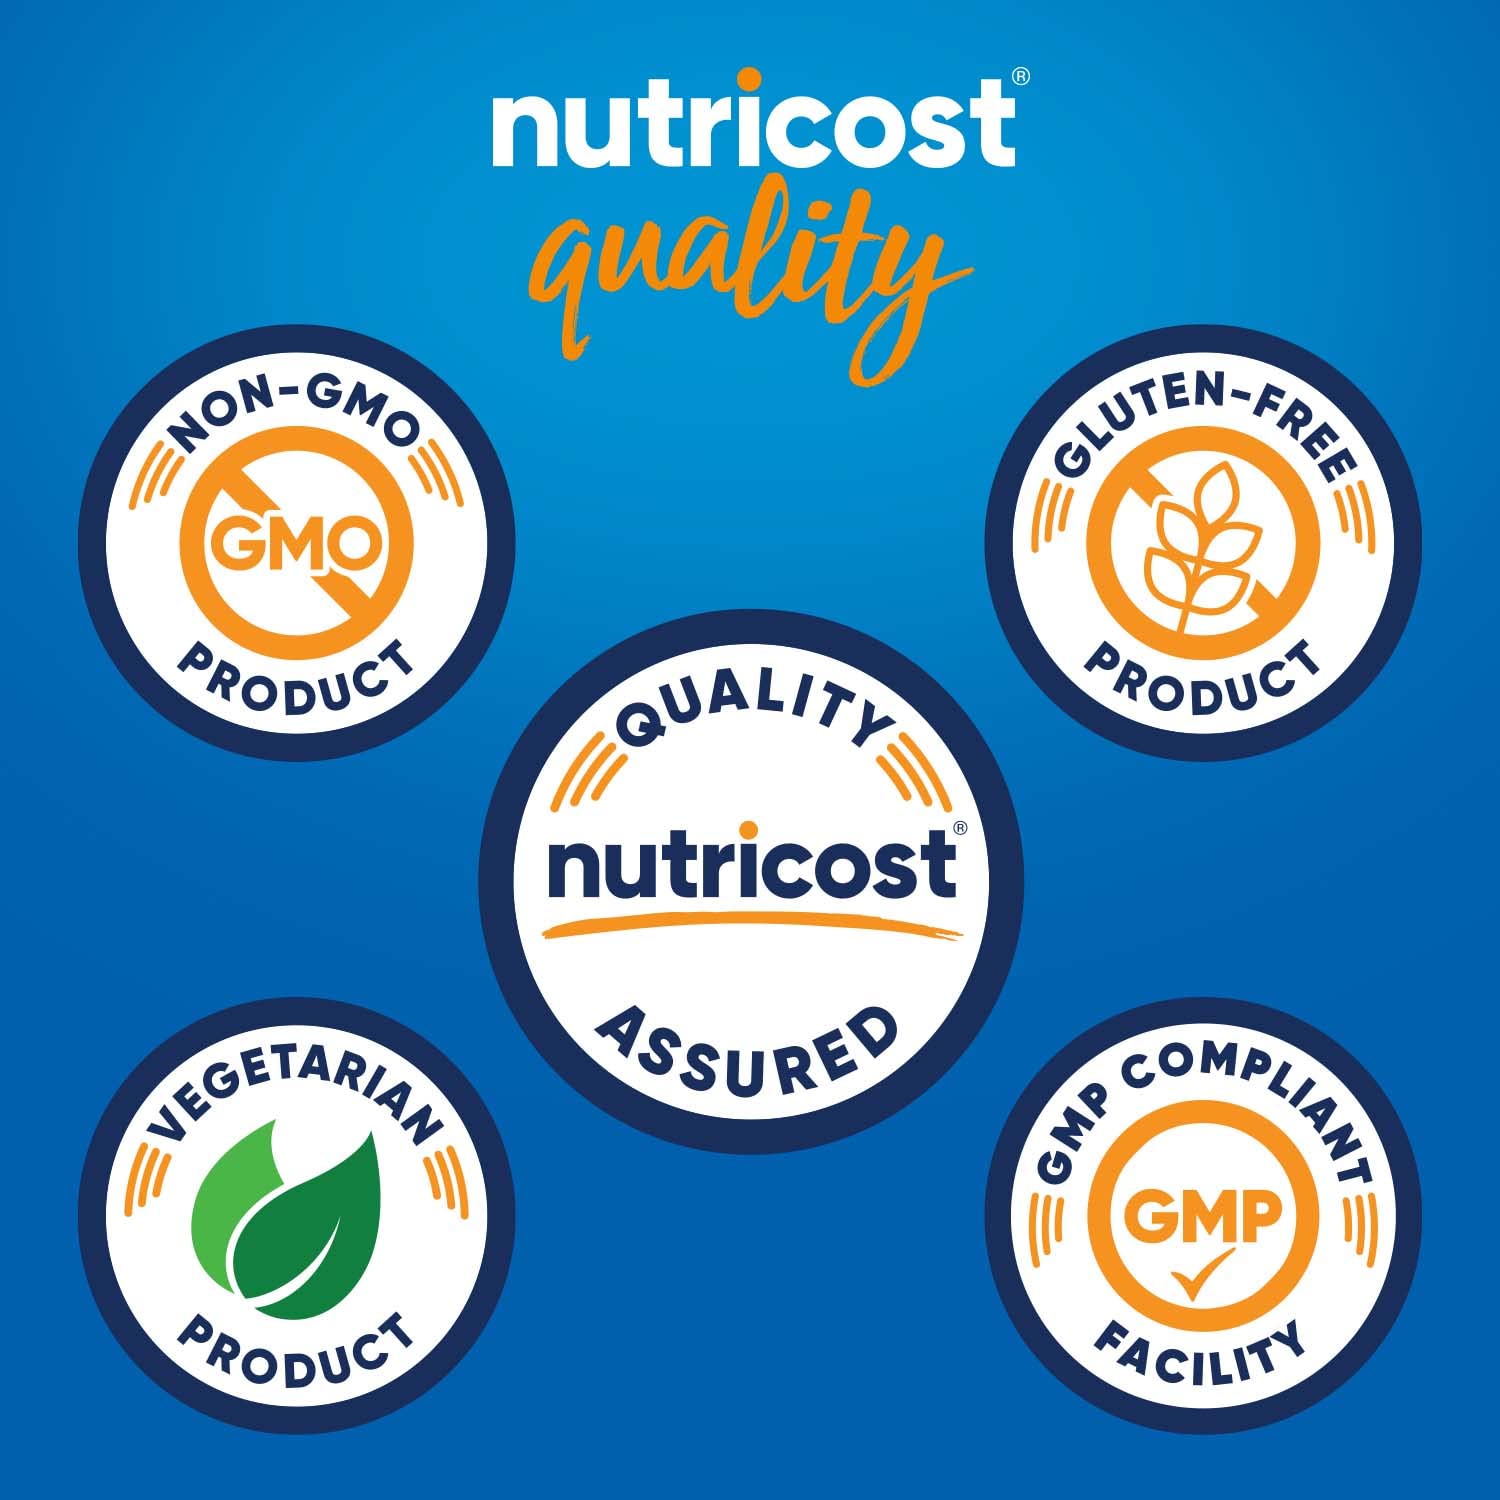 Nutricost Tart Cherry Extract 3000mg, 240 Vegetarian Capsules - Gluten Free, Non-GMO